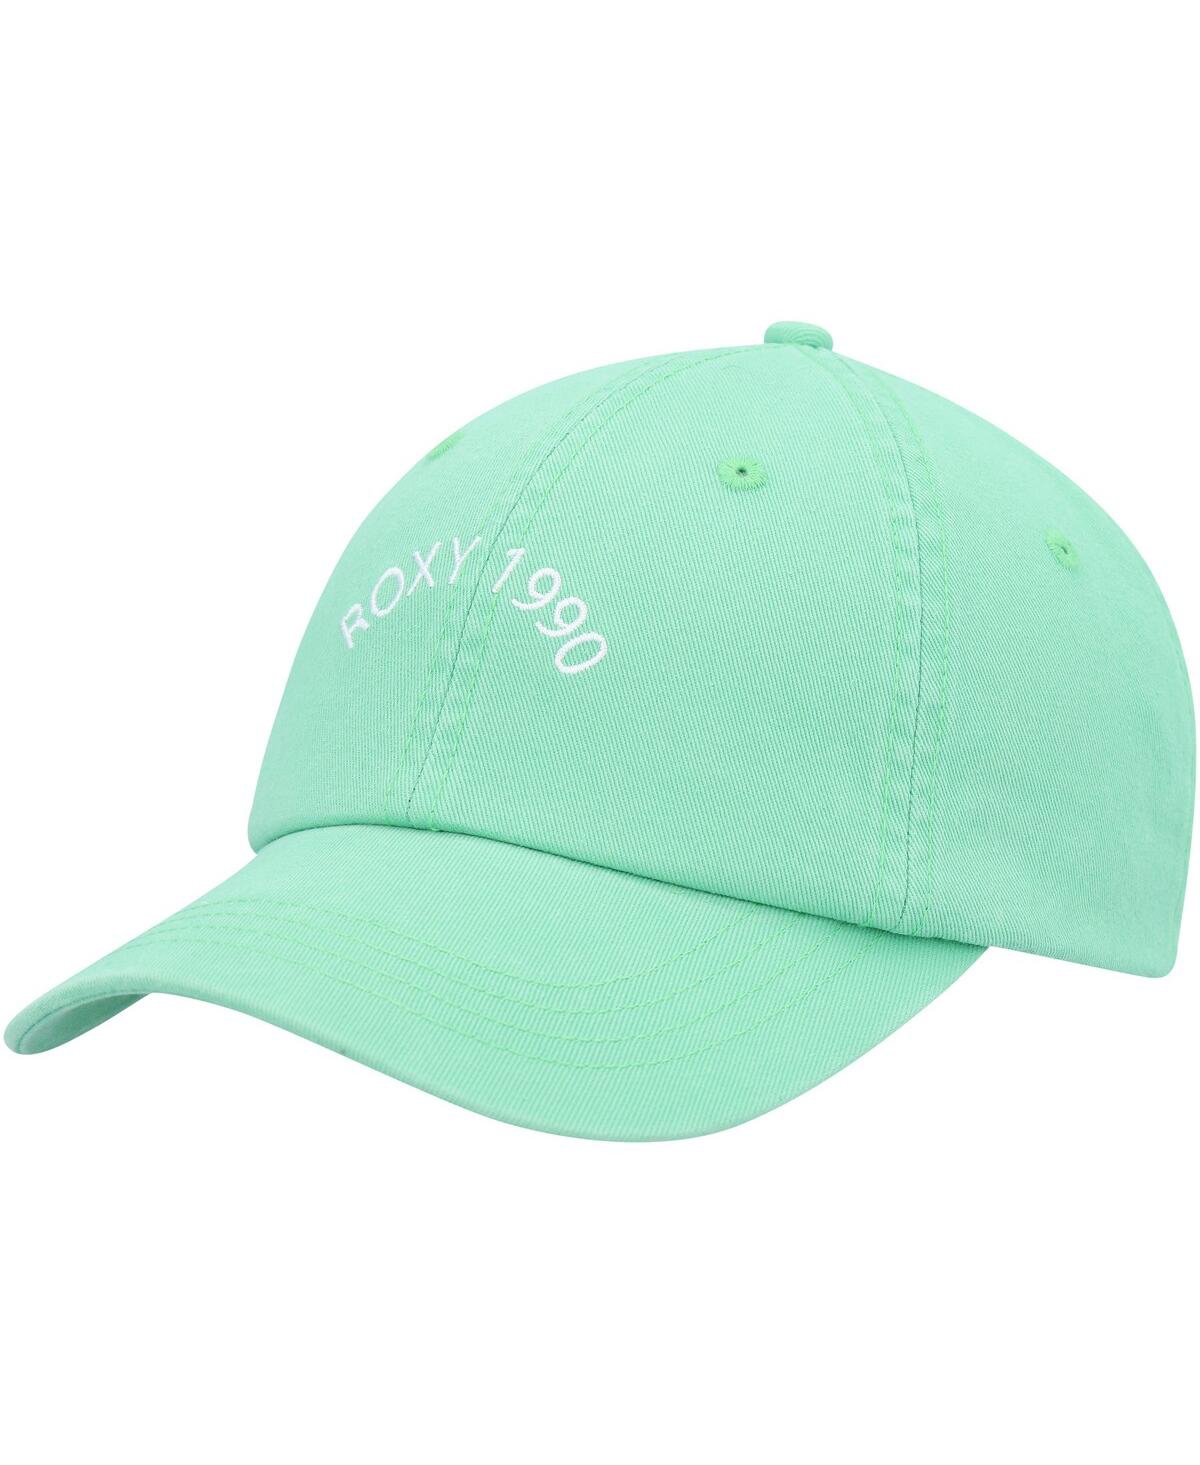 Roxy Women's  Mint Toadstool Adjustable Hat